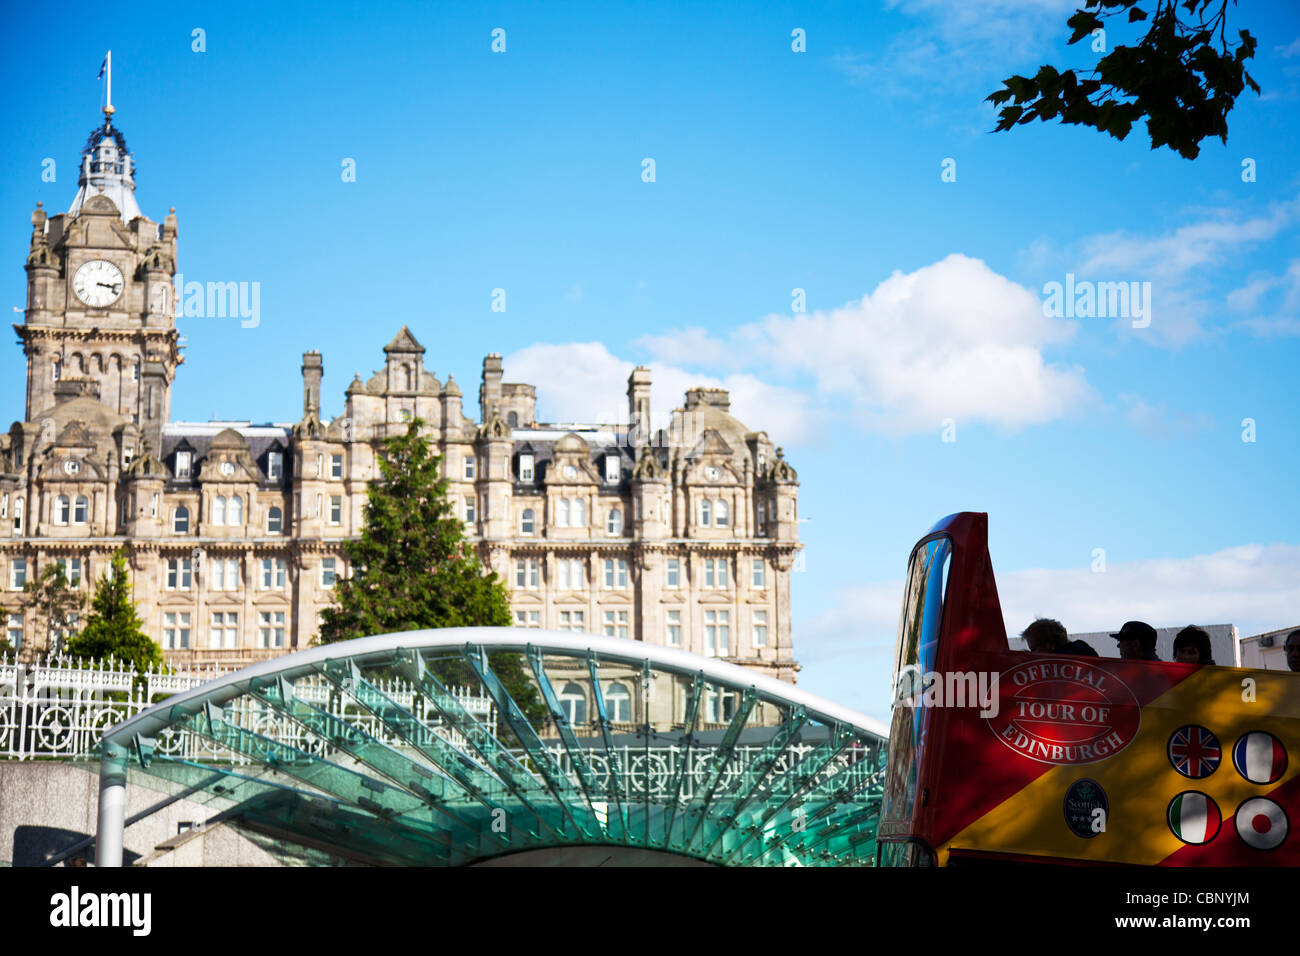 Offizielle Bustour von Edinburgh Busreise vorbeifahren The Balmoral Hotel und Waverley Station mit Touristen an Bord Stockfoto